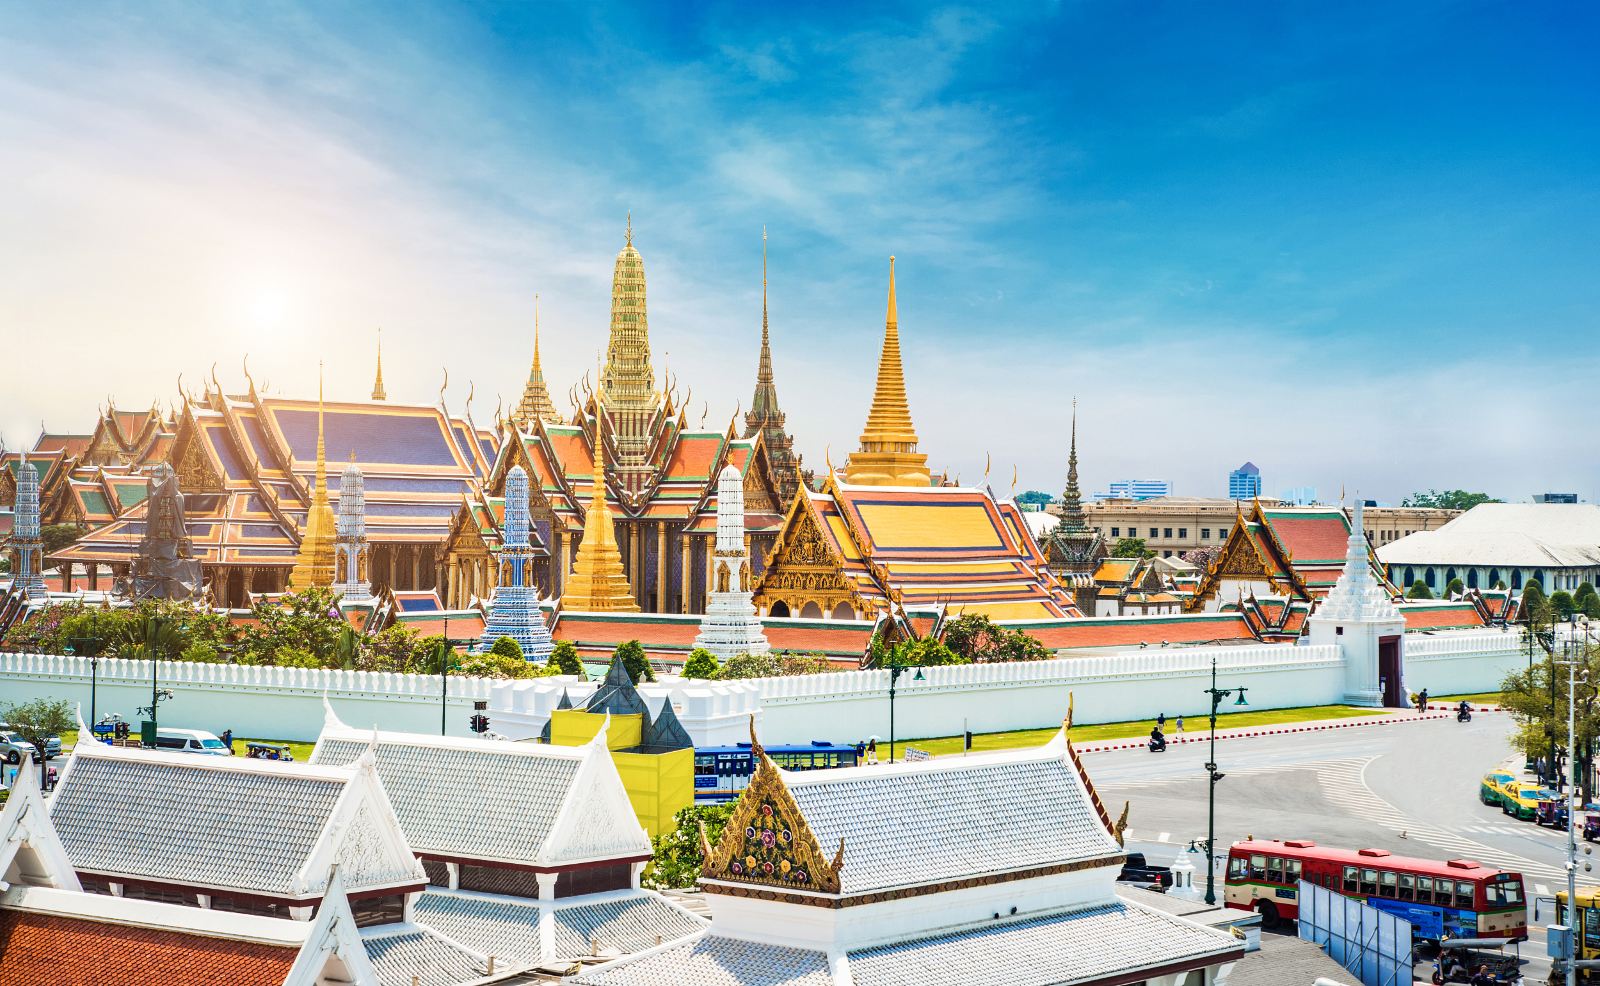 泰国曼谷 玉佛寺 วัดพระศรีรัตนศาสดาราม วัดพระแก้ว